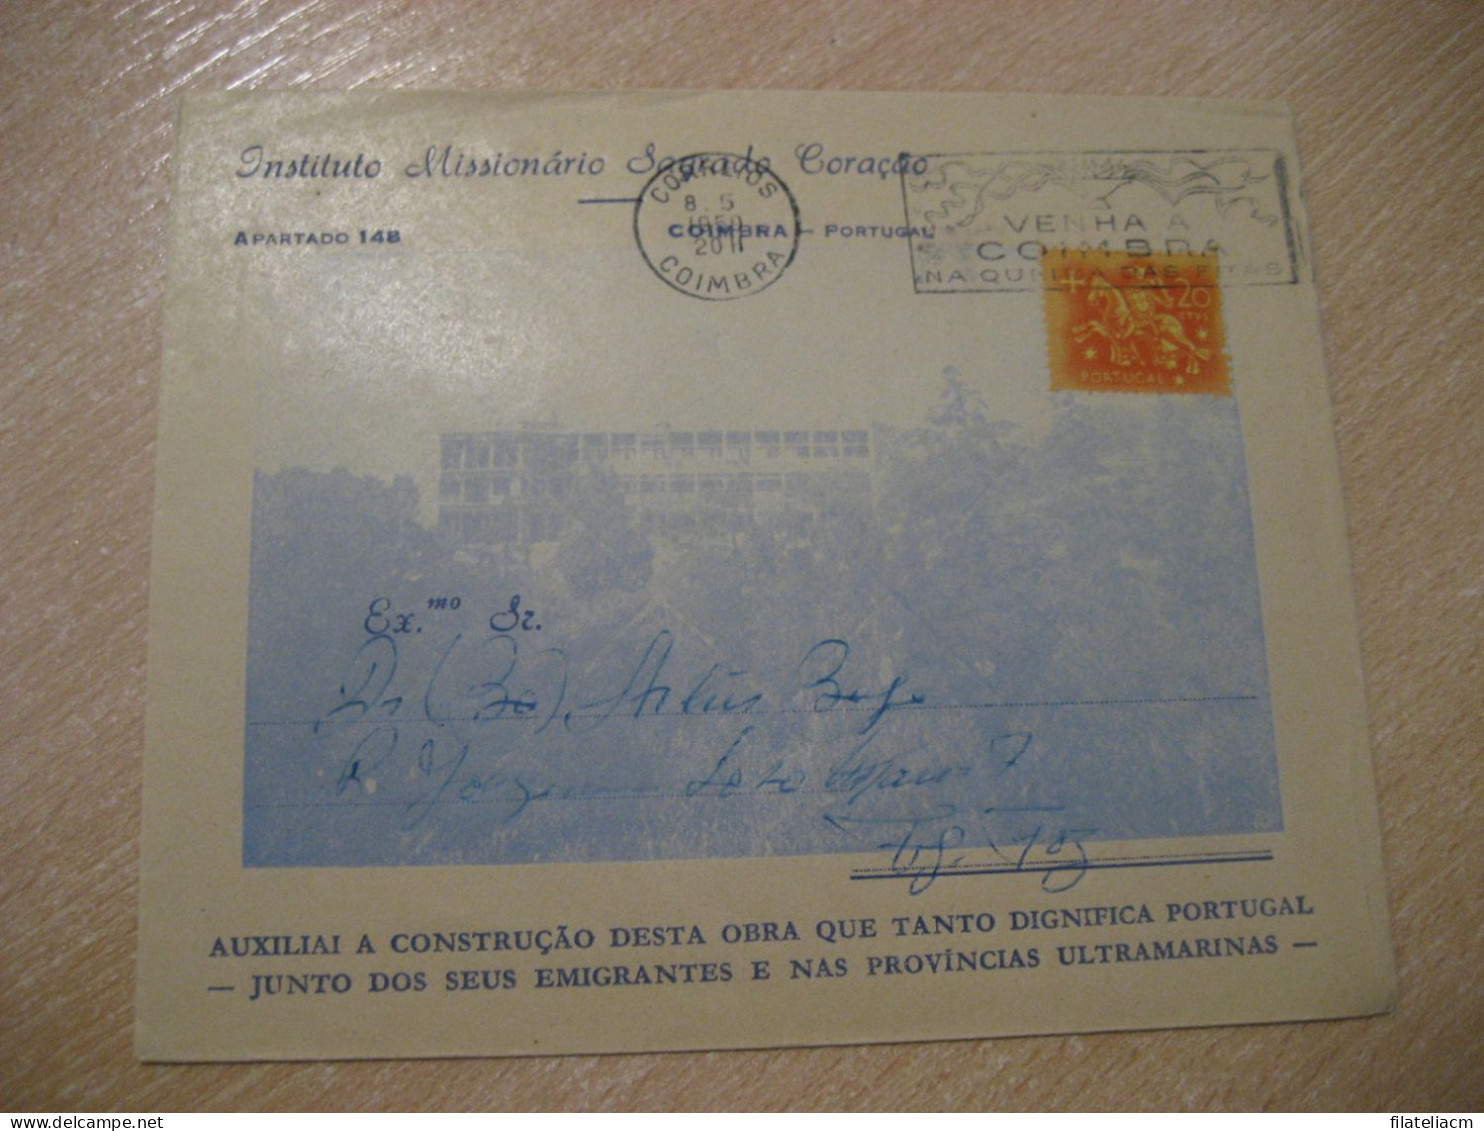 COIMBRA 1959 To Figueira Da Foz Cancel Instituto Missionario Sagrado Coraçao Cover PORTUGAL - Cartas & Documentos